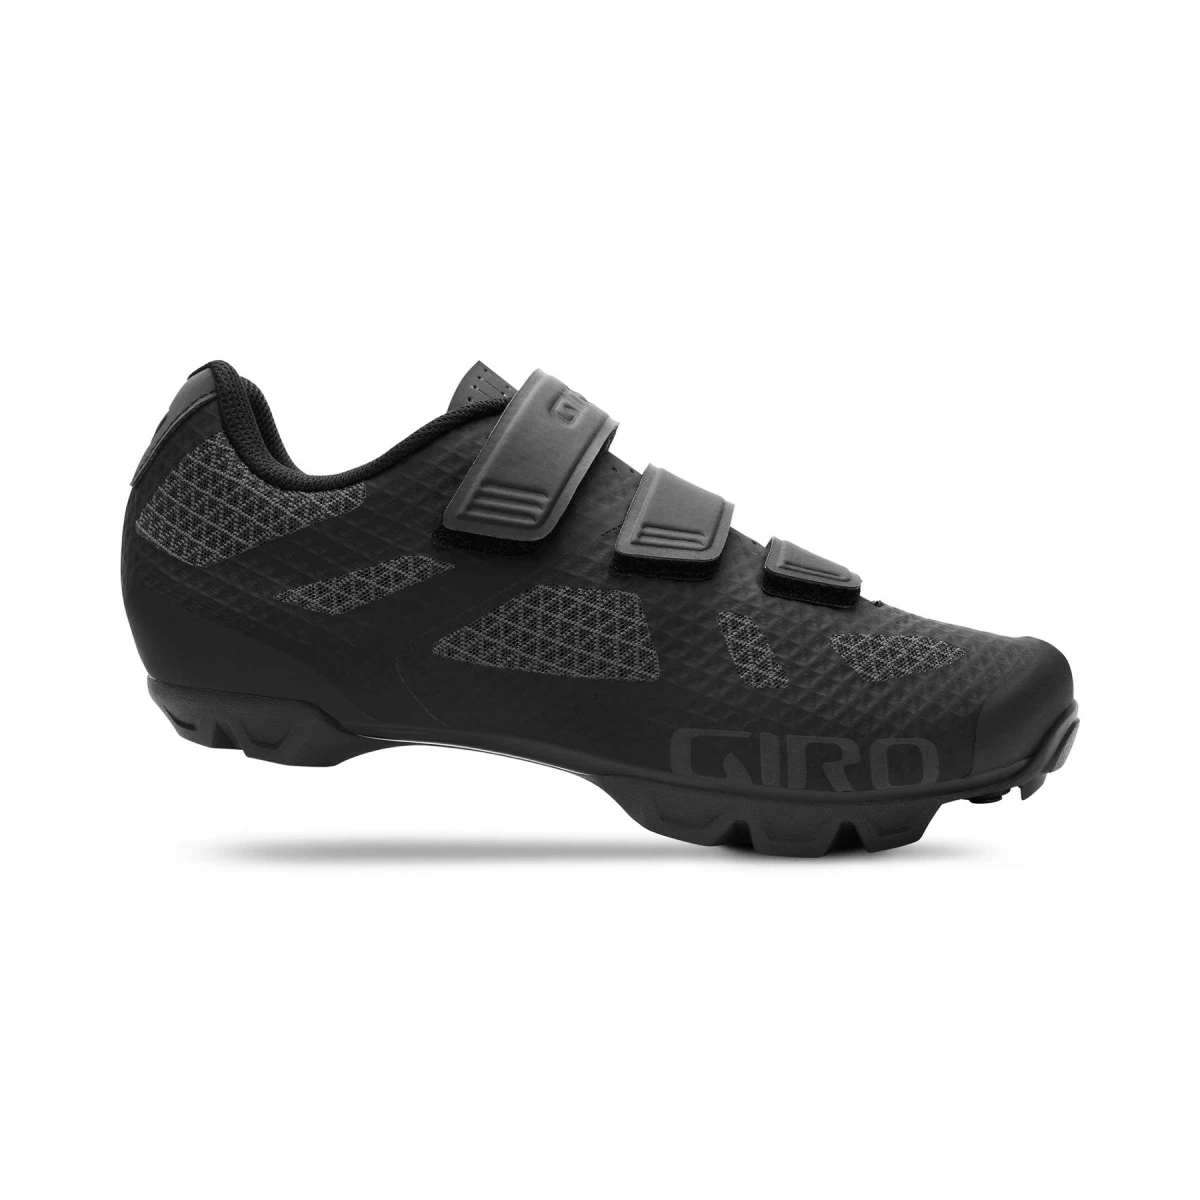 Giro Ranger cycling shoes - black